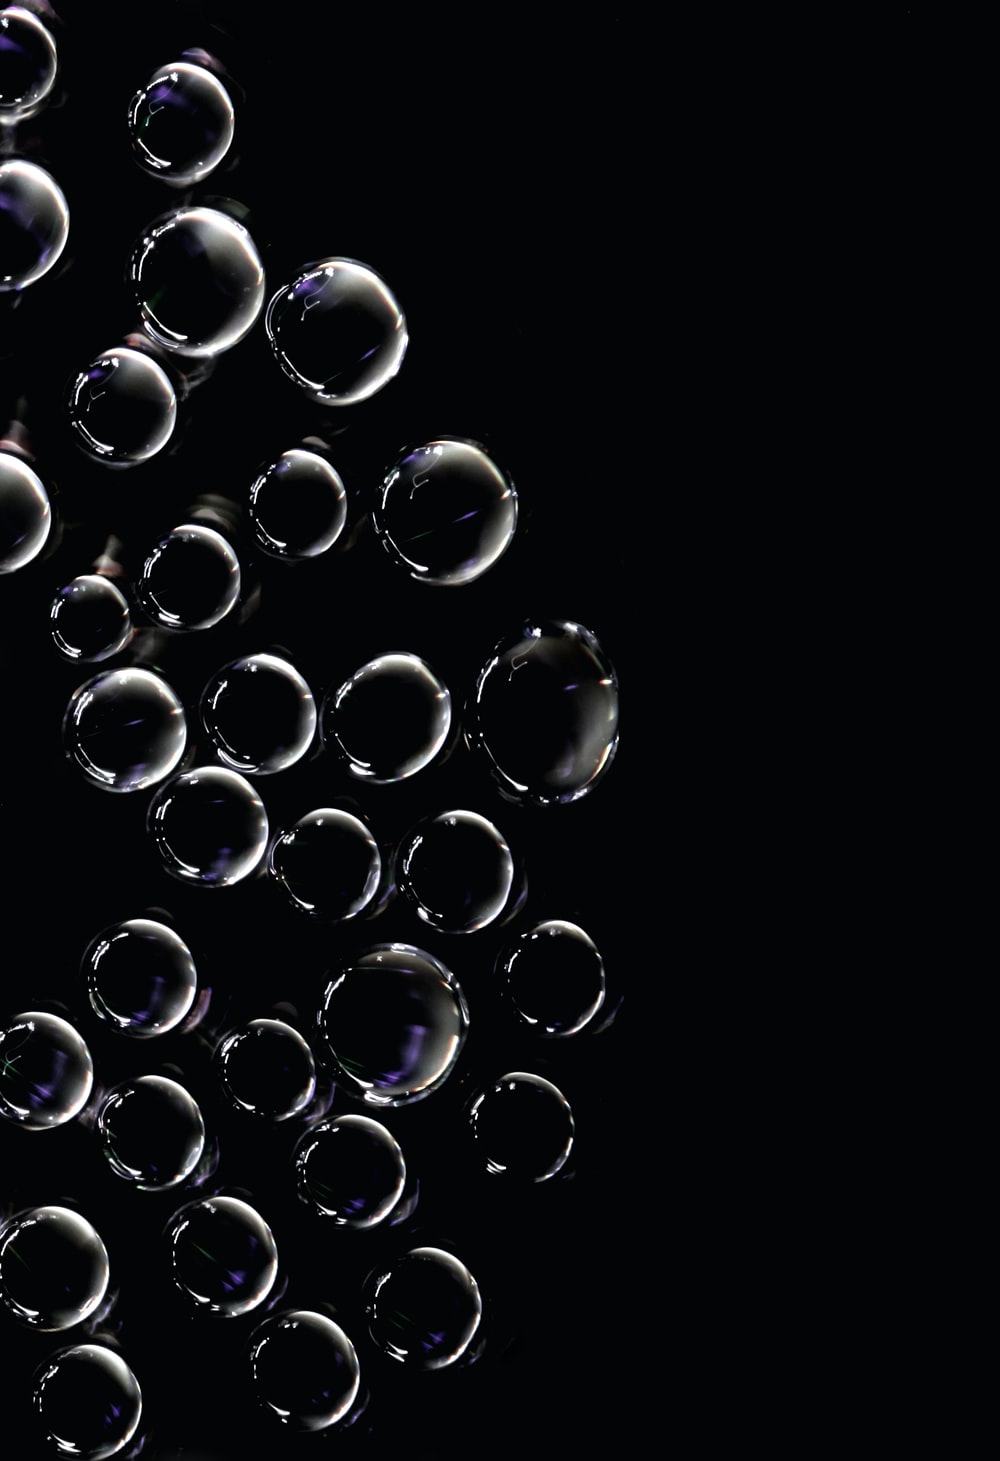 Bubbles Pictures Hq Image